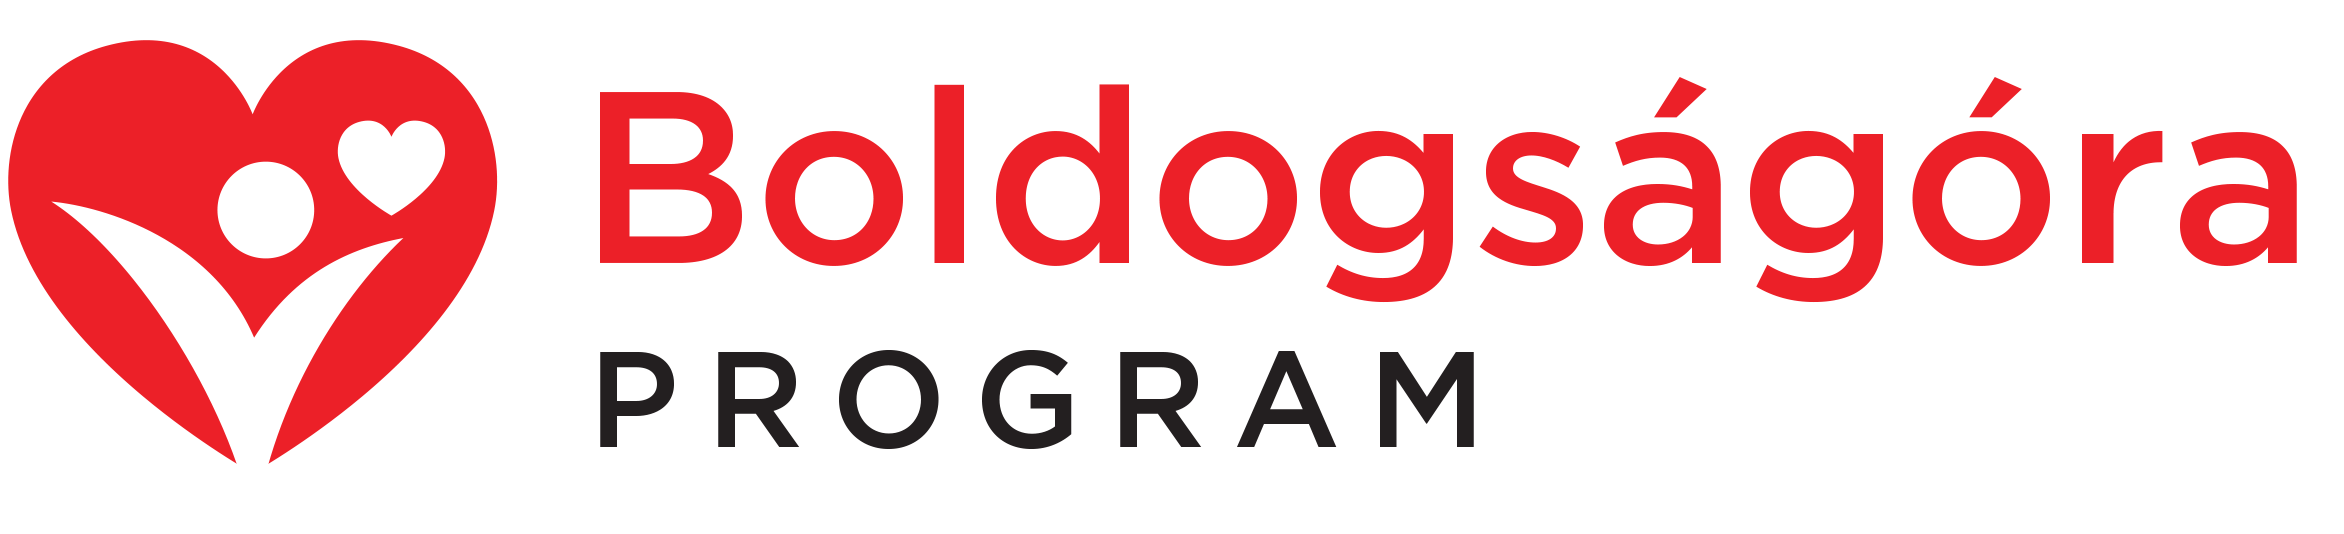 boldogsagora_logo